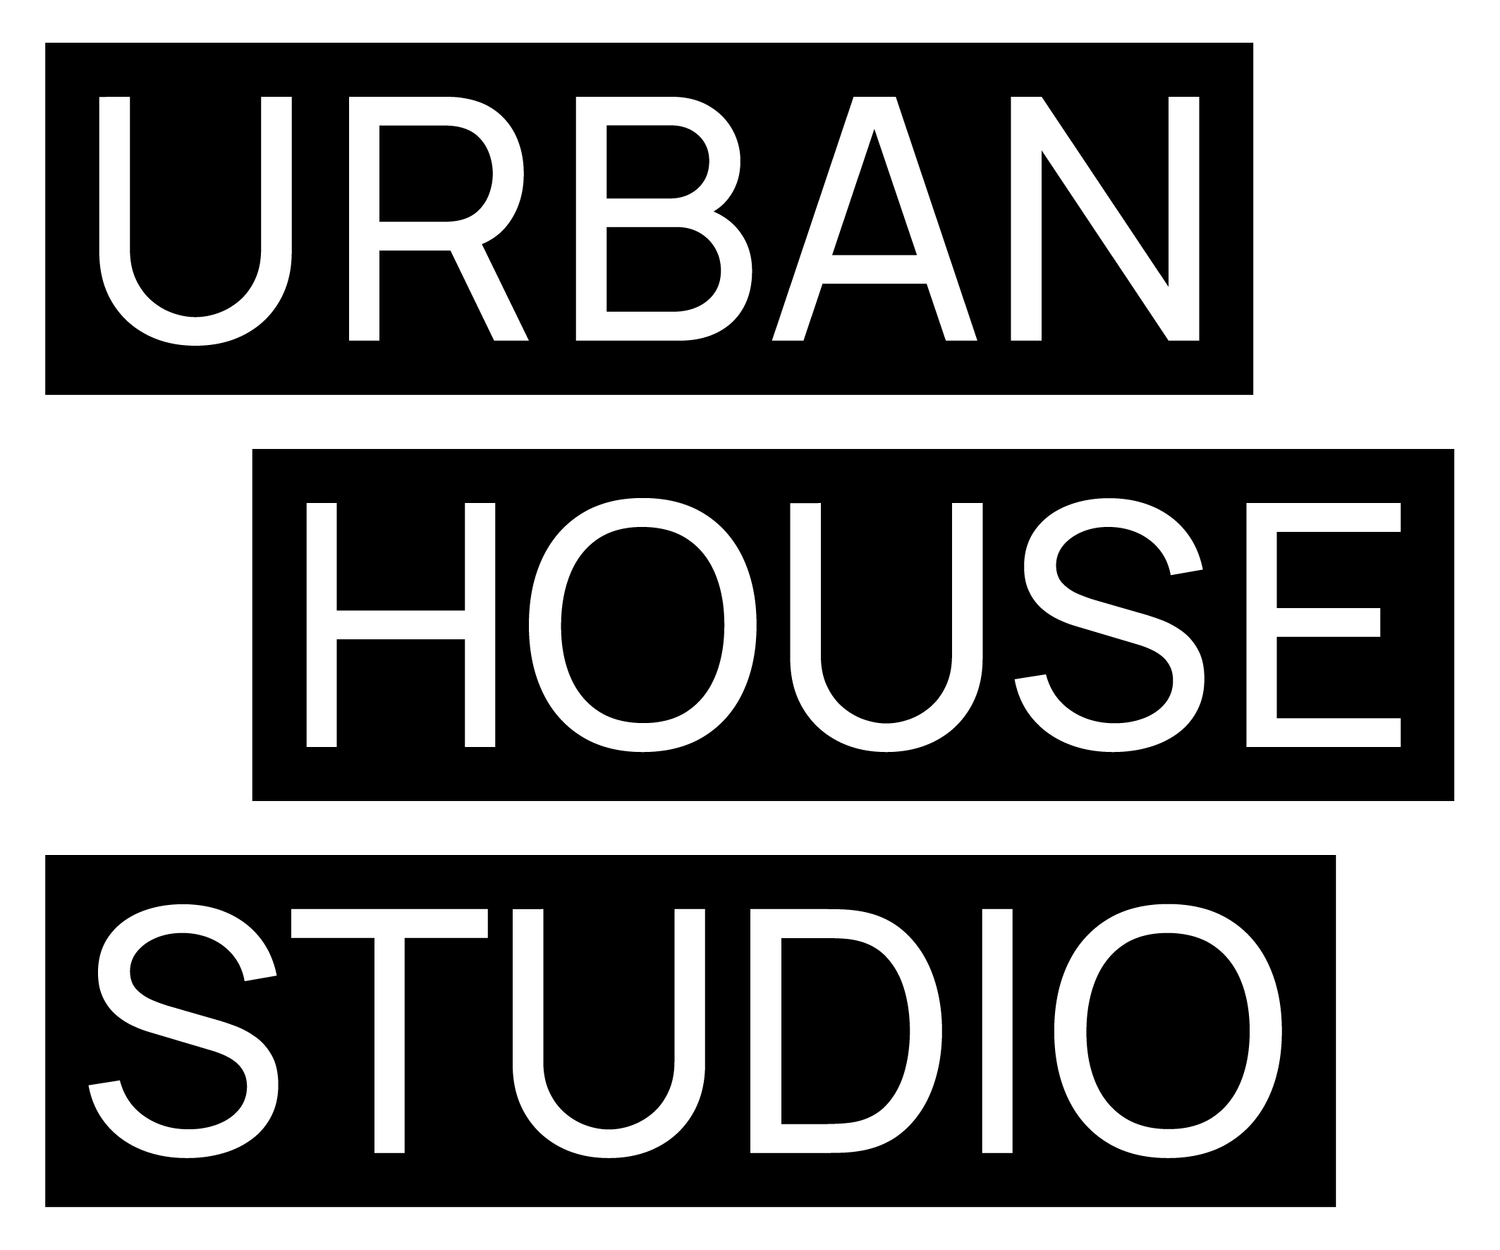 URBAN HOUSE STUDIO